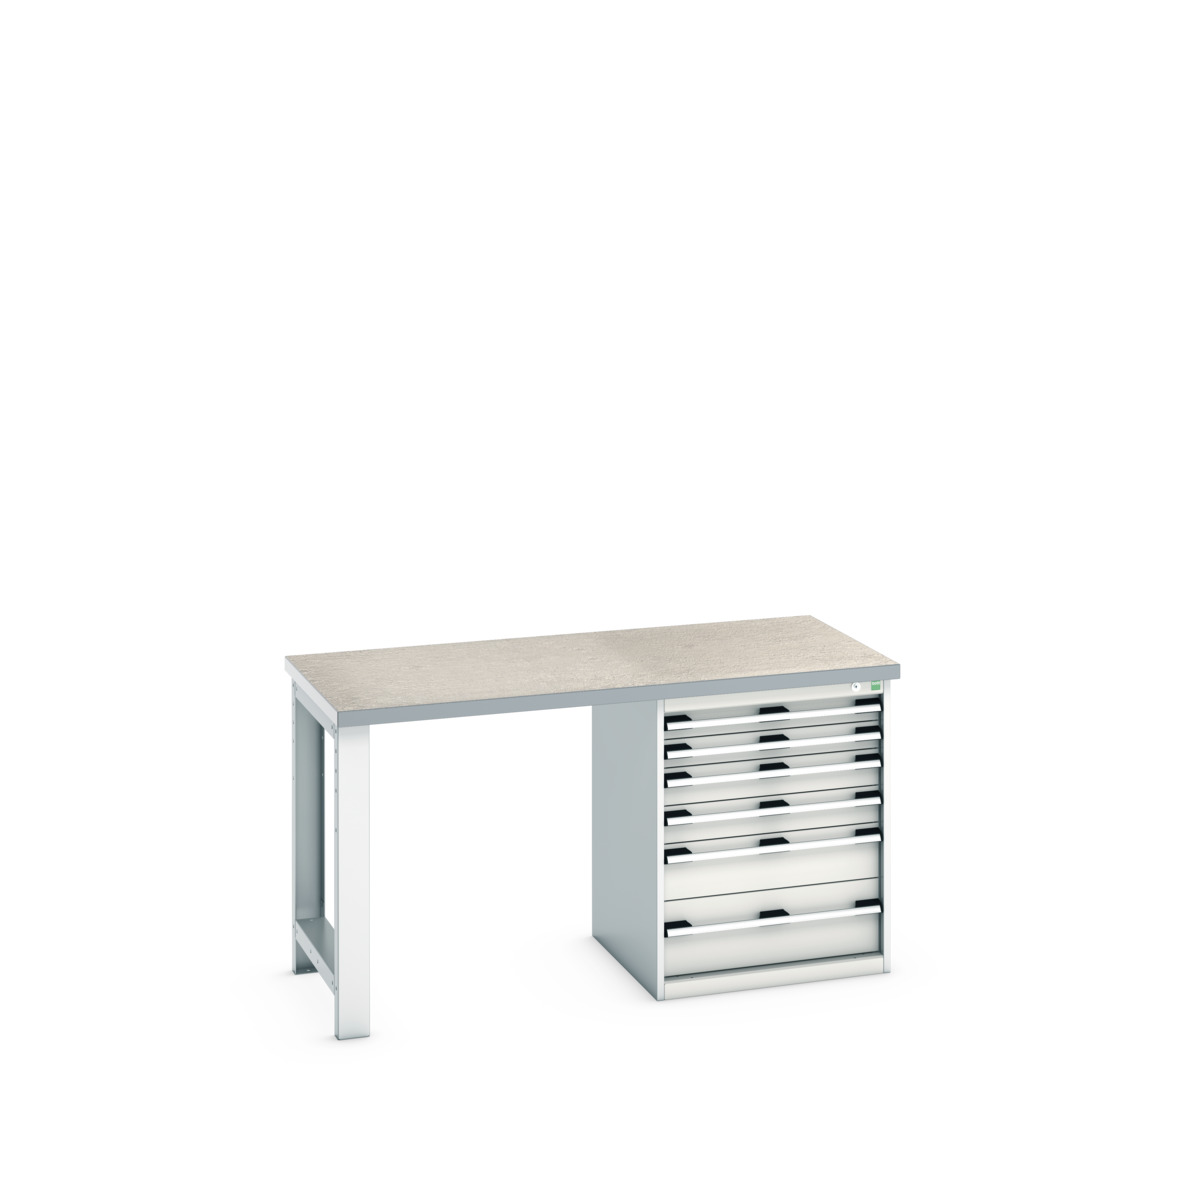 41003141.16V - cubio pedestal bench (lino)